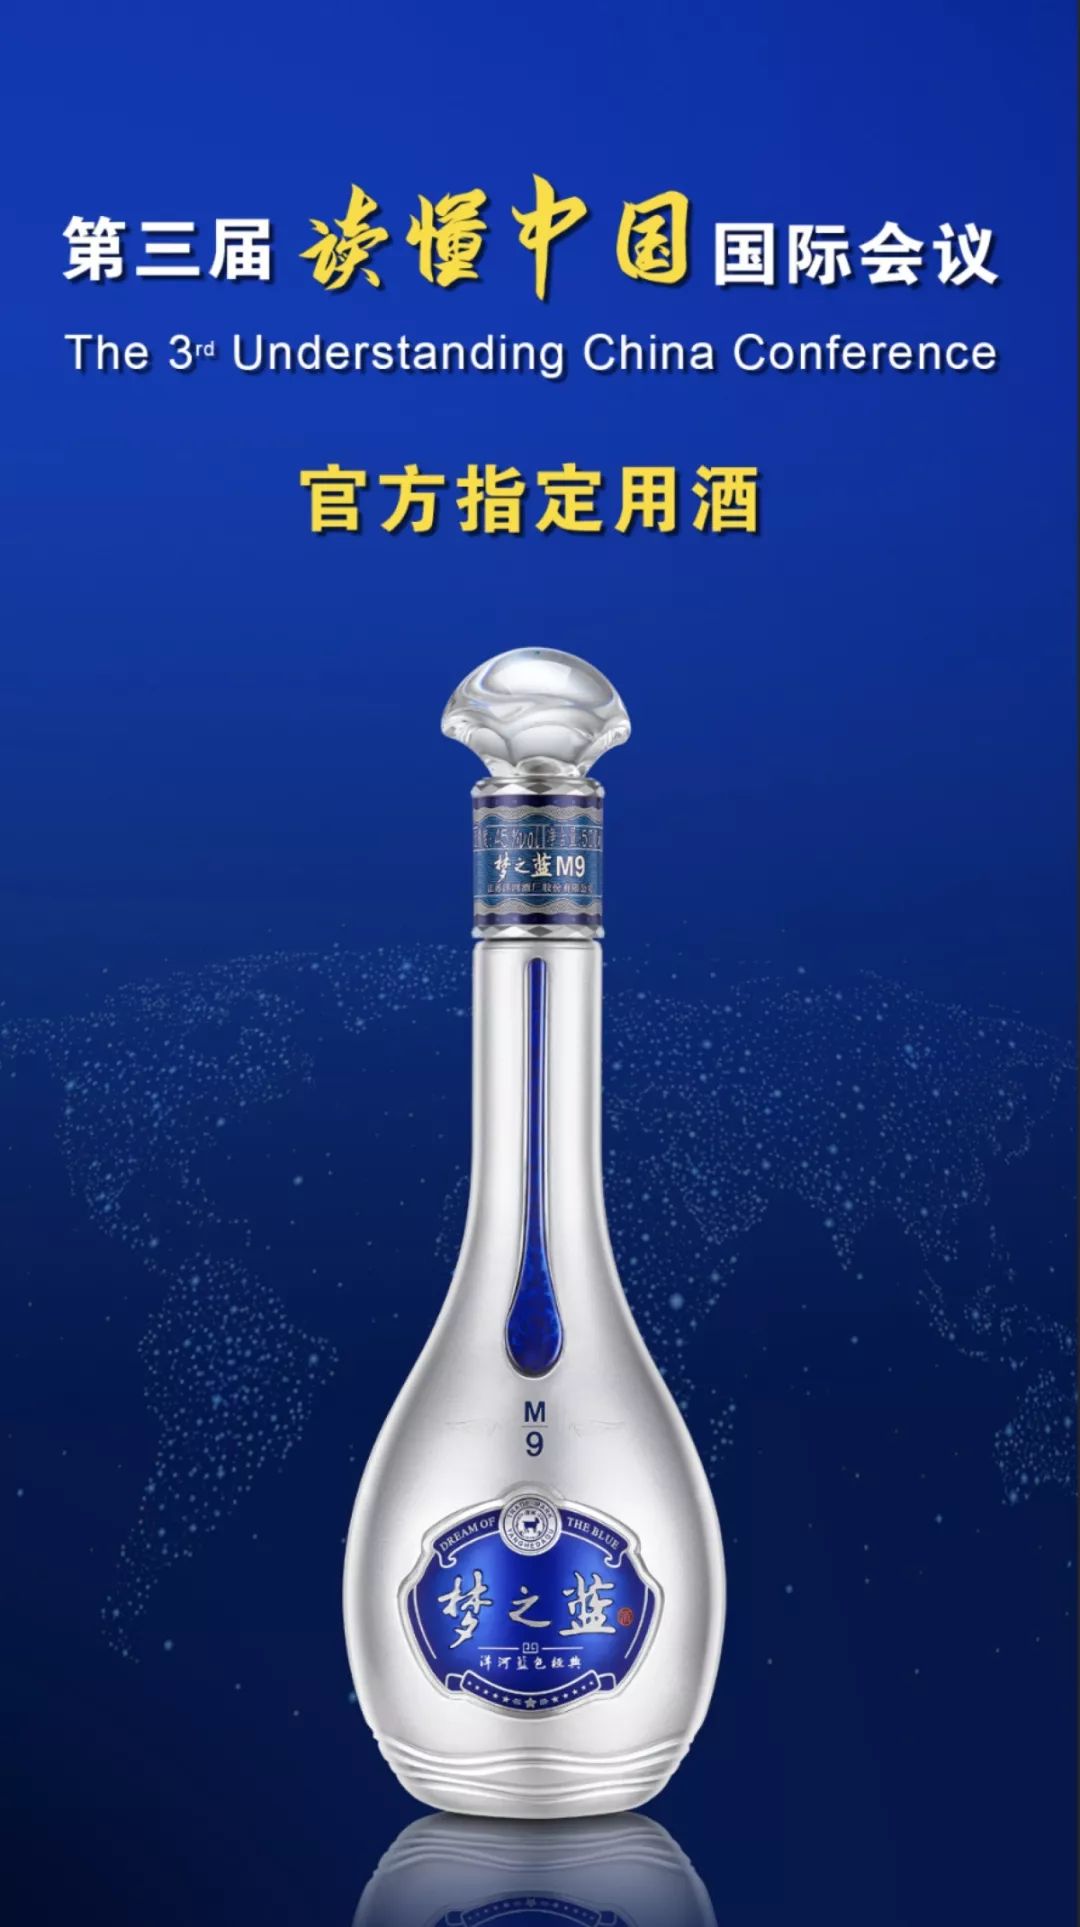 之蓝m9将作为第三届读懂中国国际会议官方指定用酒届时将在北京隆重